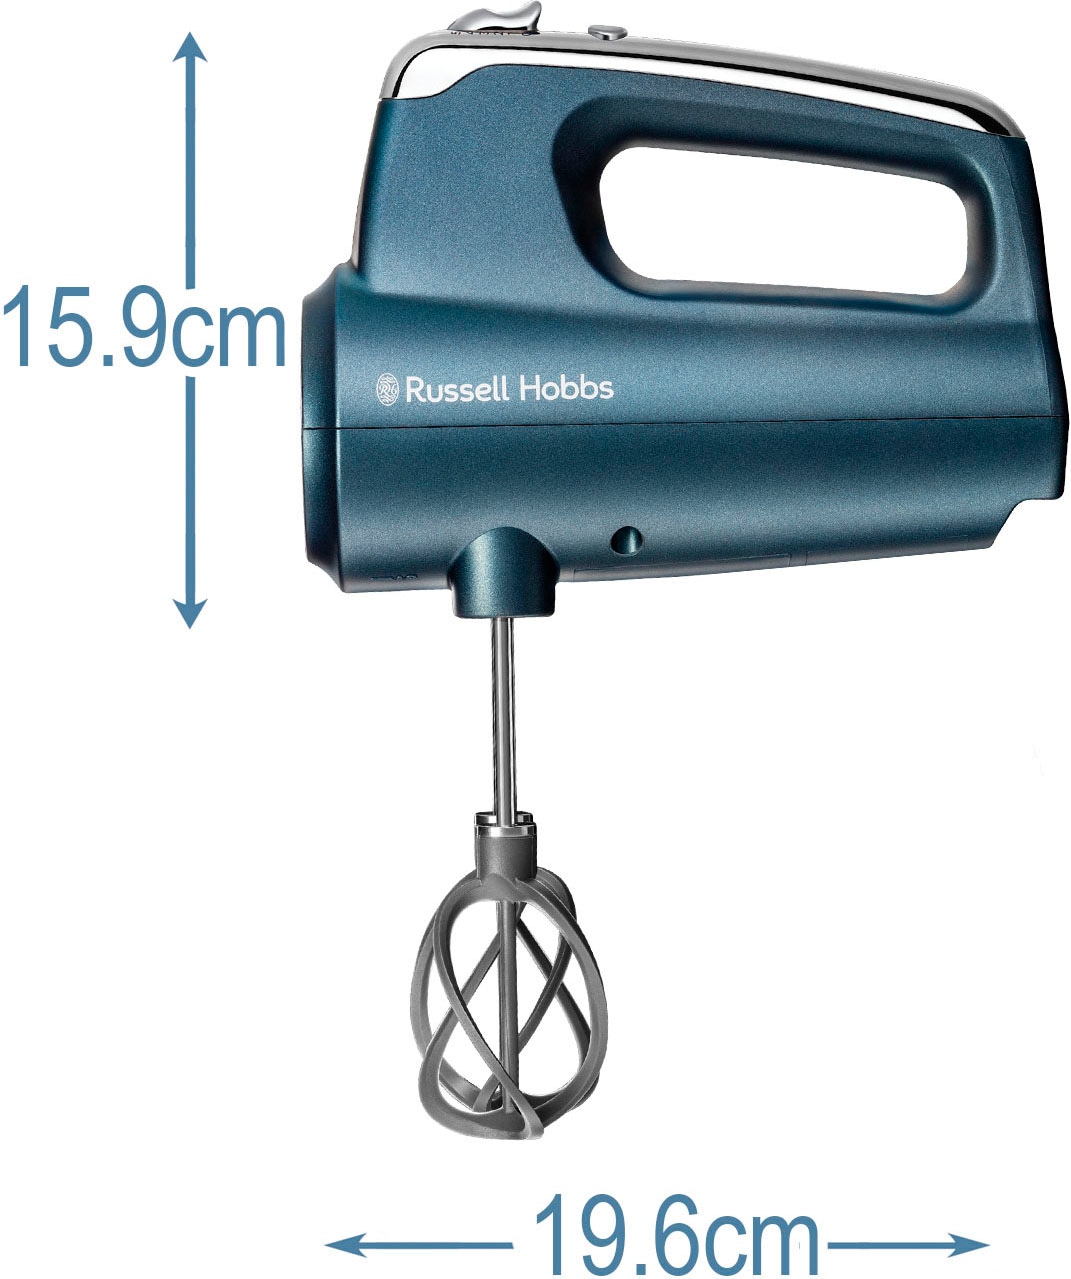 RUSSELL HOBBS Handmixer »SWIRL 25893-56«, 350 W